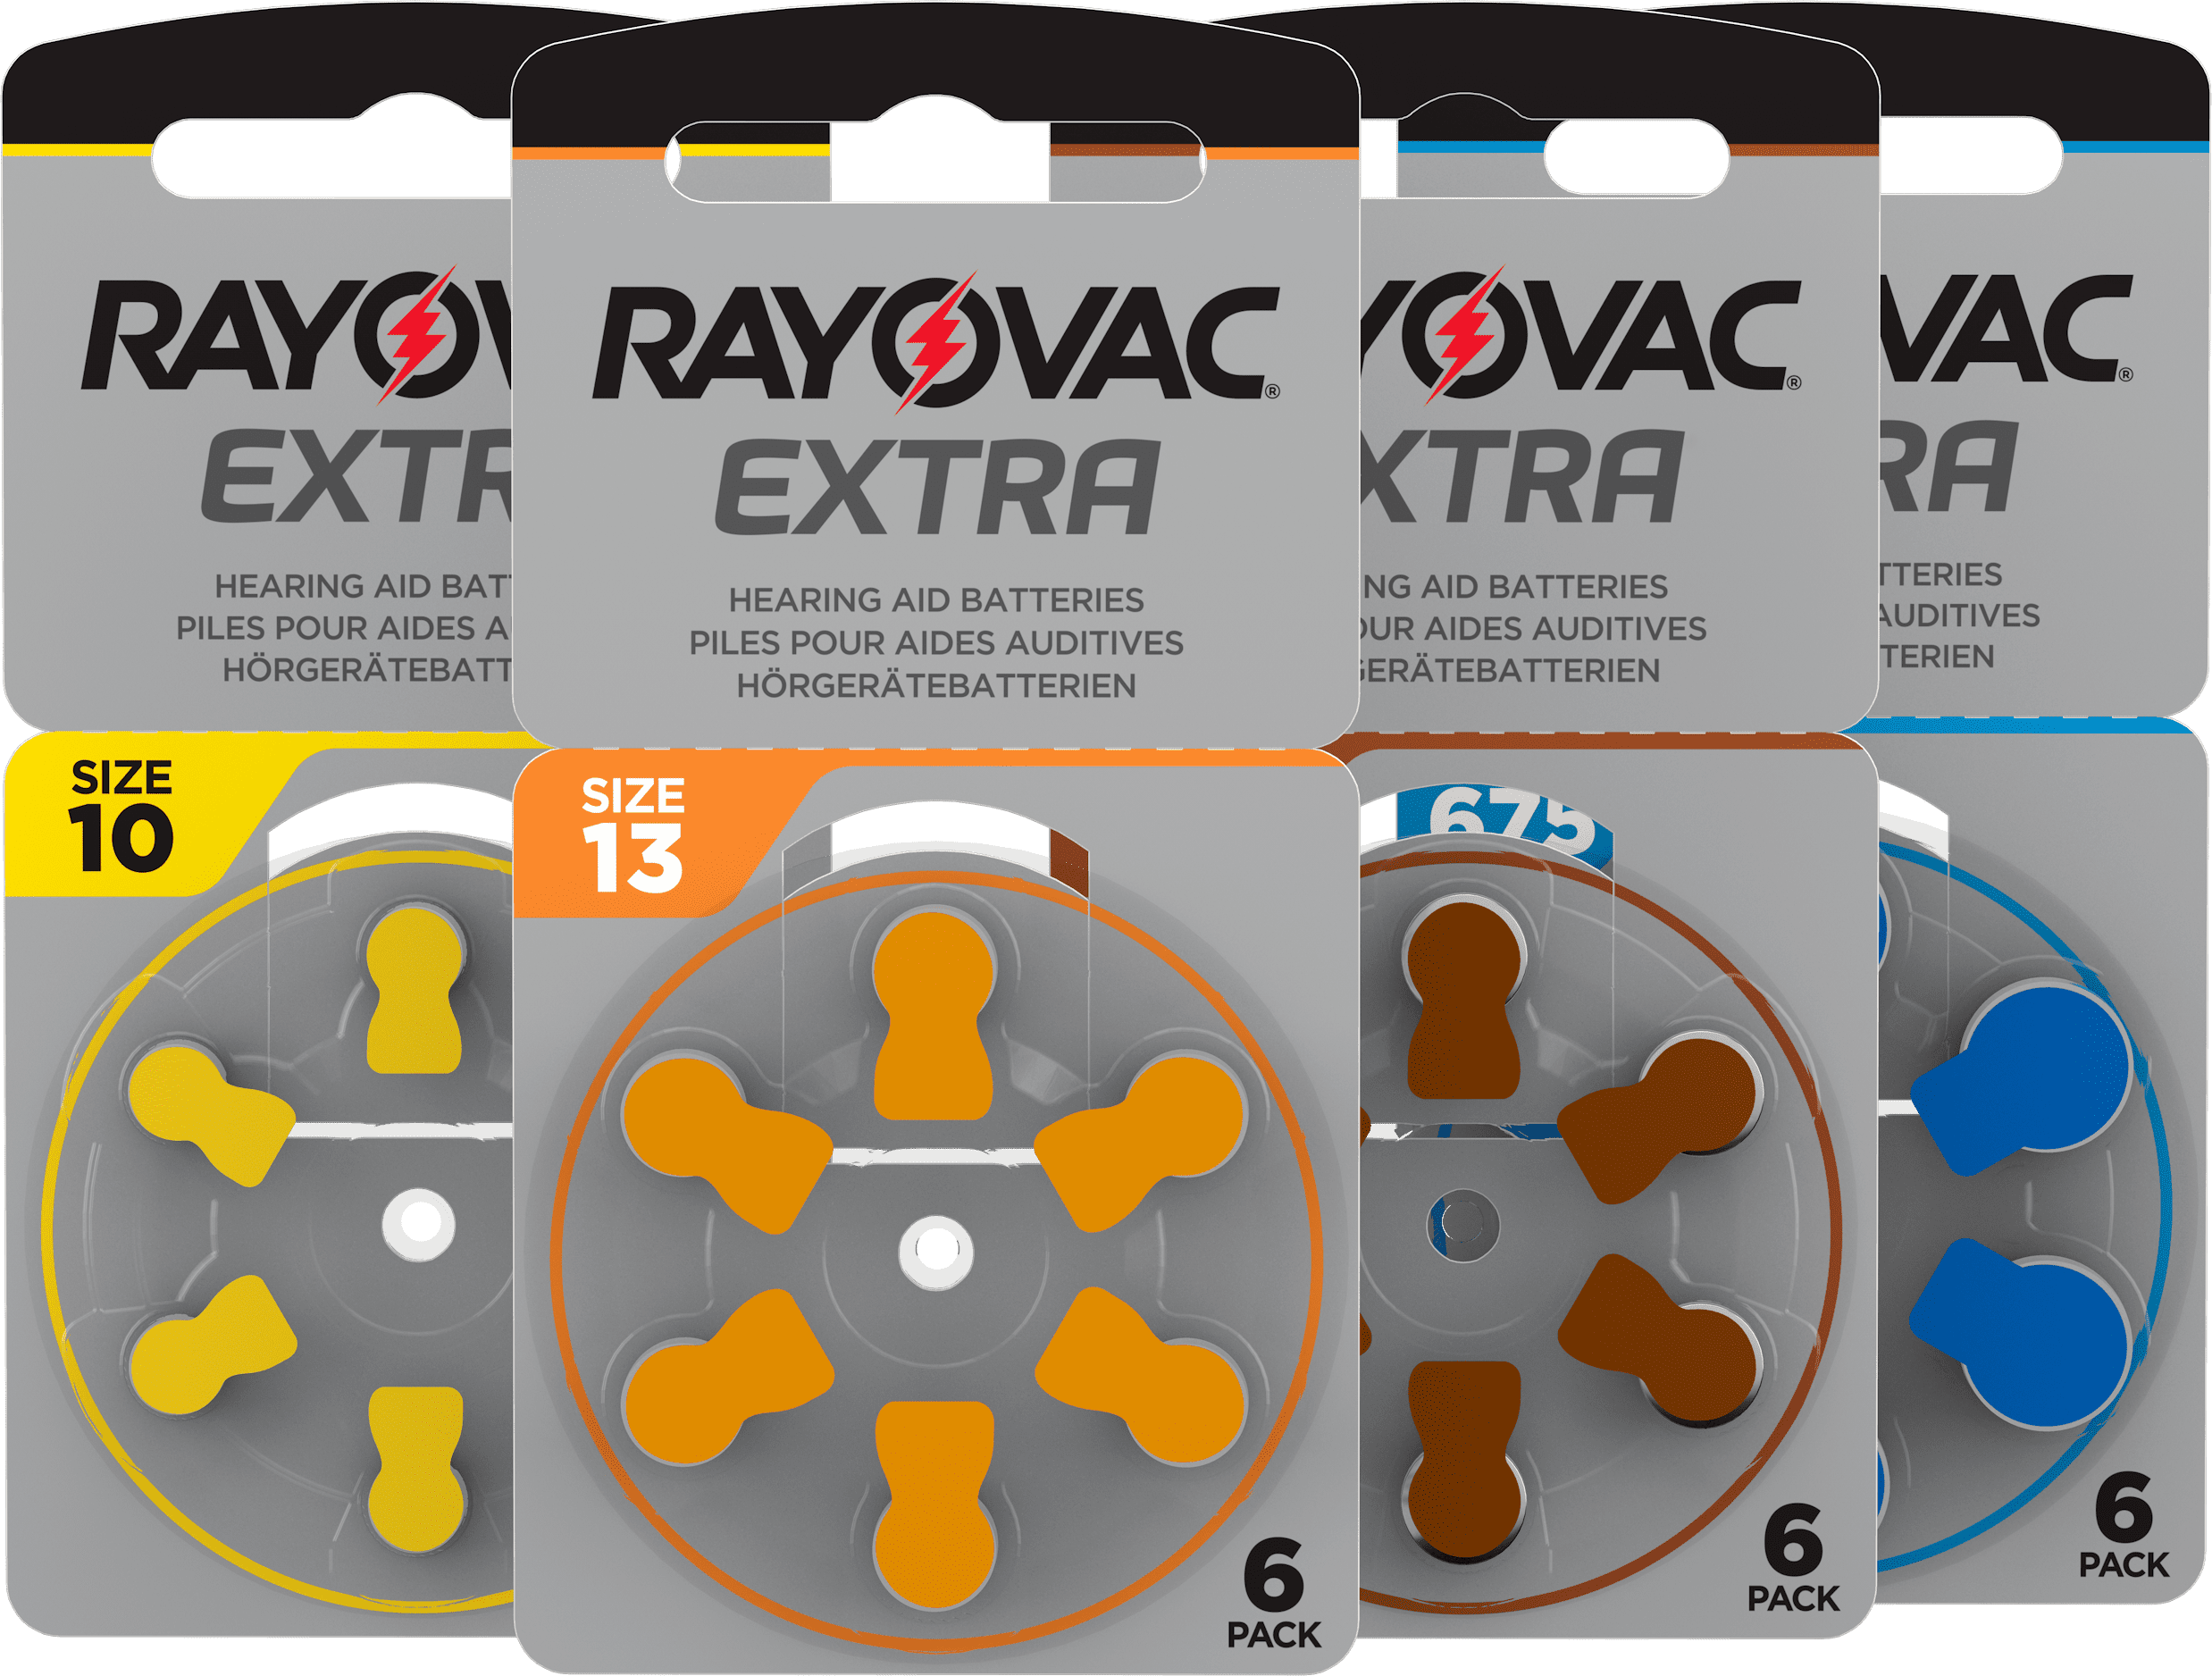 Rayovac Extra Packs